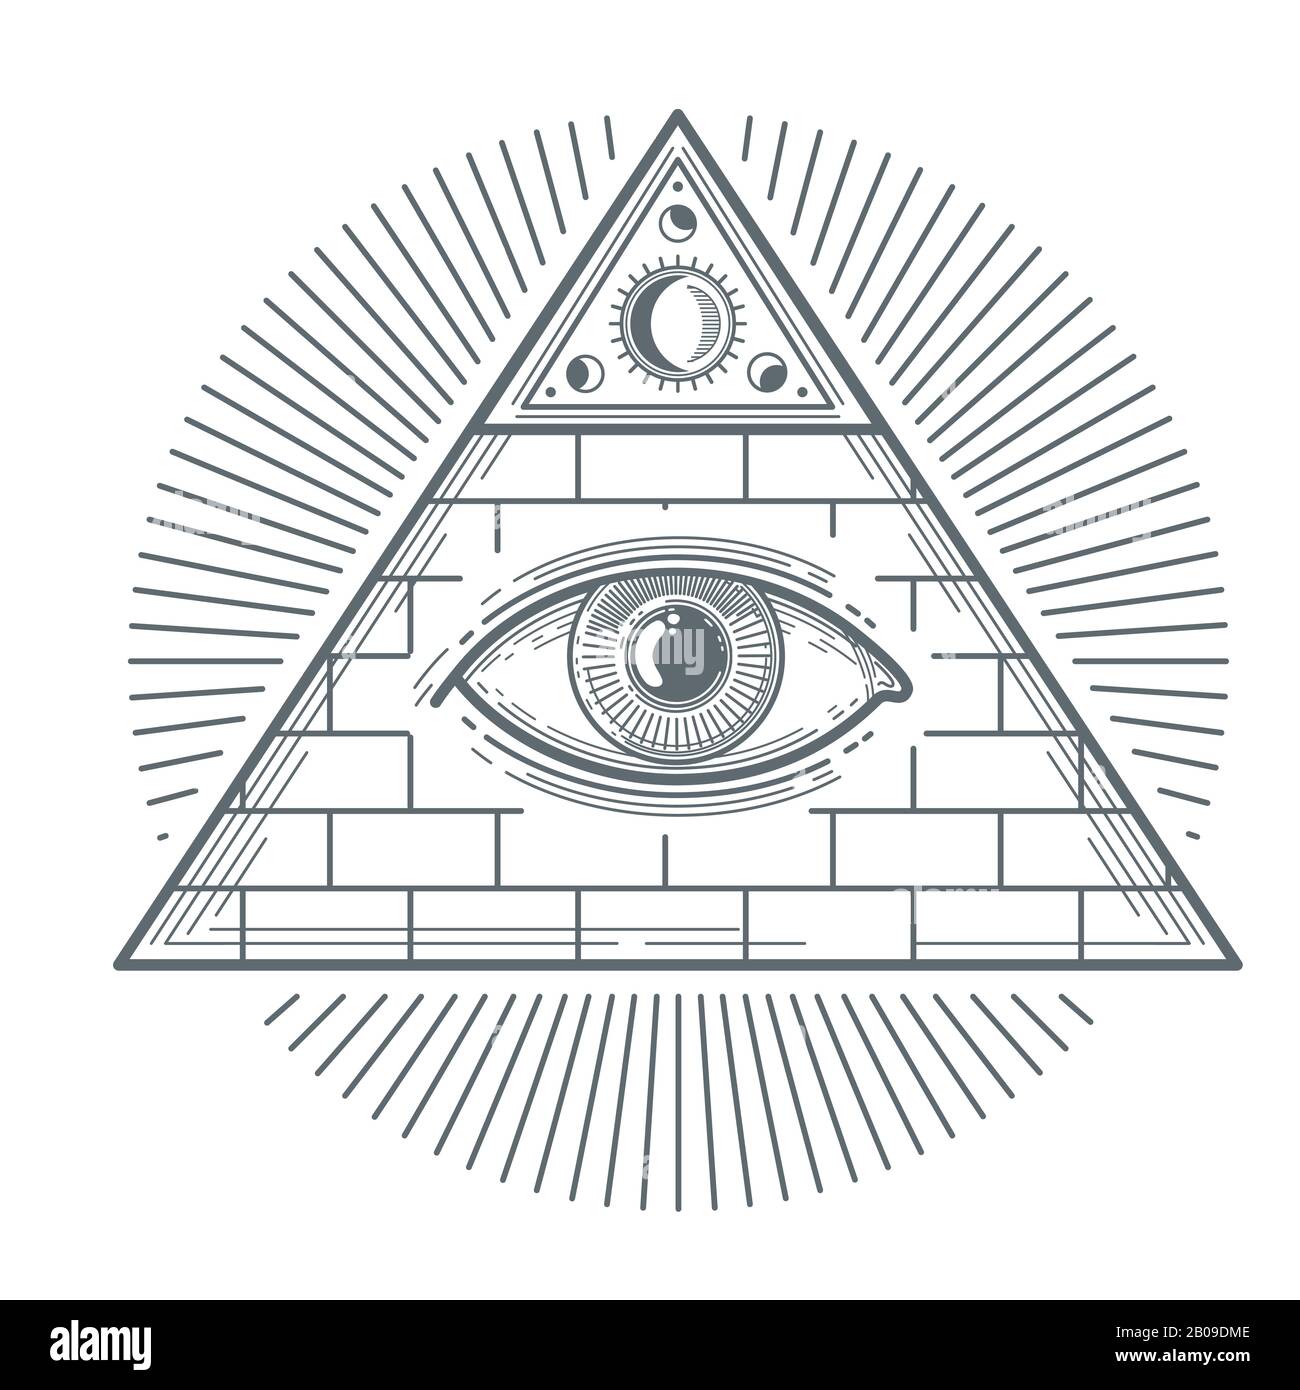 Mystisches okkultes Zeichen mit freimaurerischer Augensymbol-Vektorillustration. Freimaurerisches Mystikzeichen, Pyramide mit Auge Stock Vektor